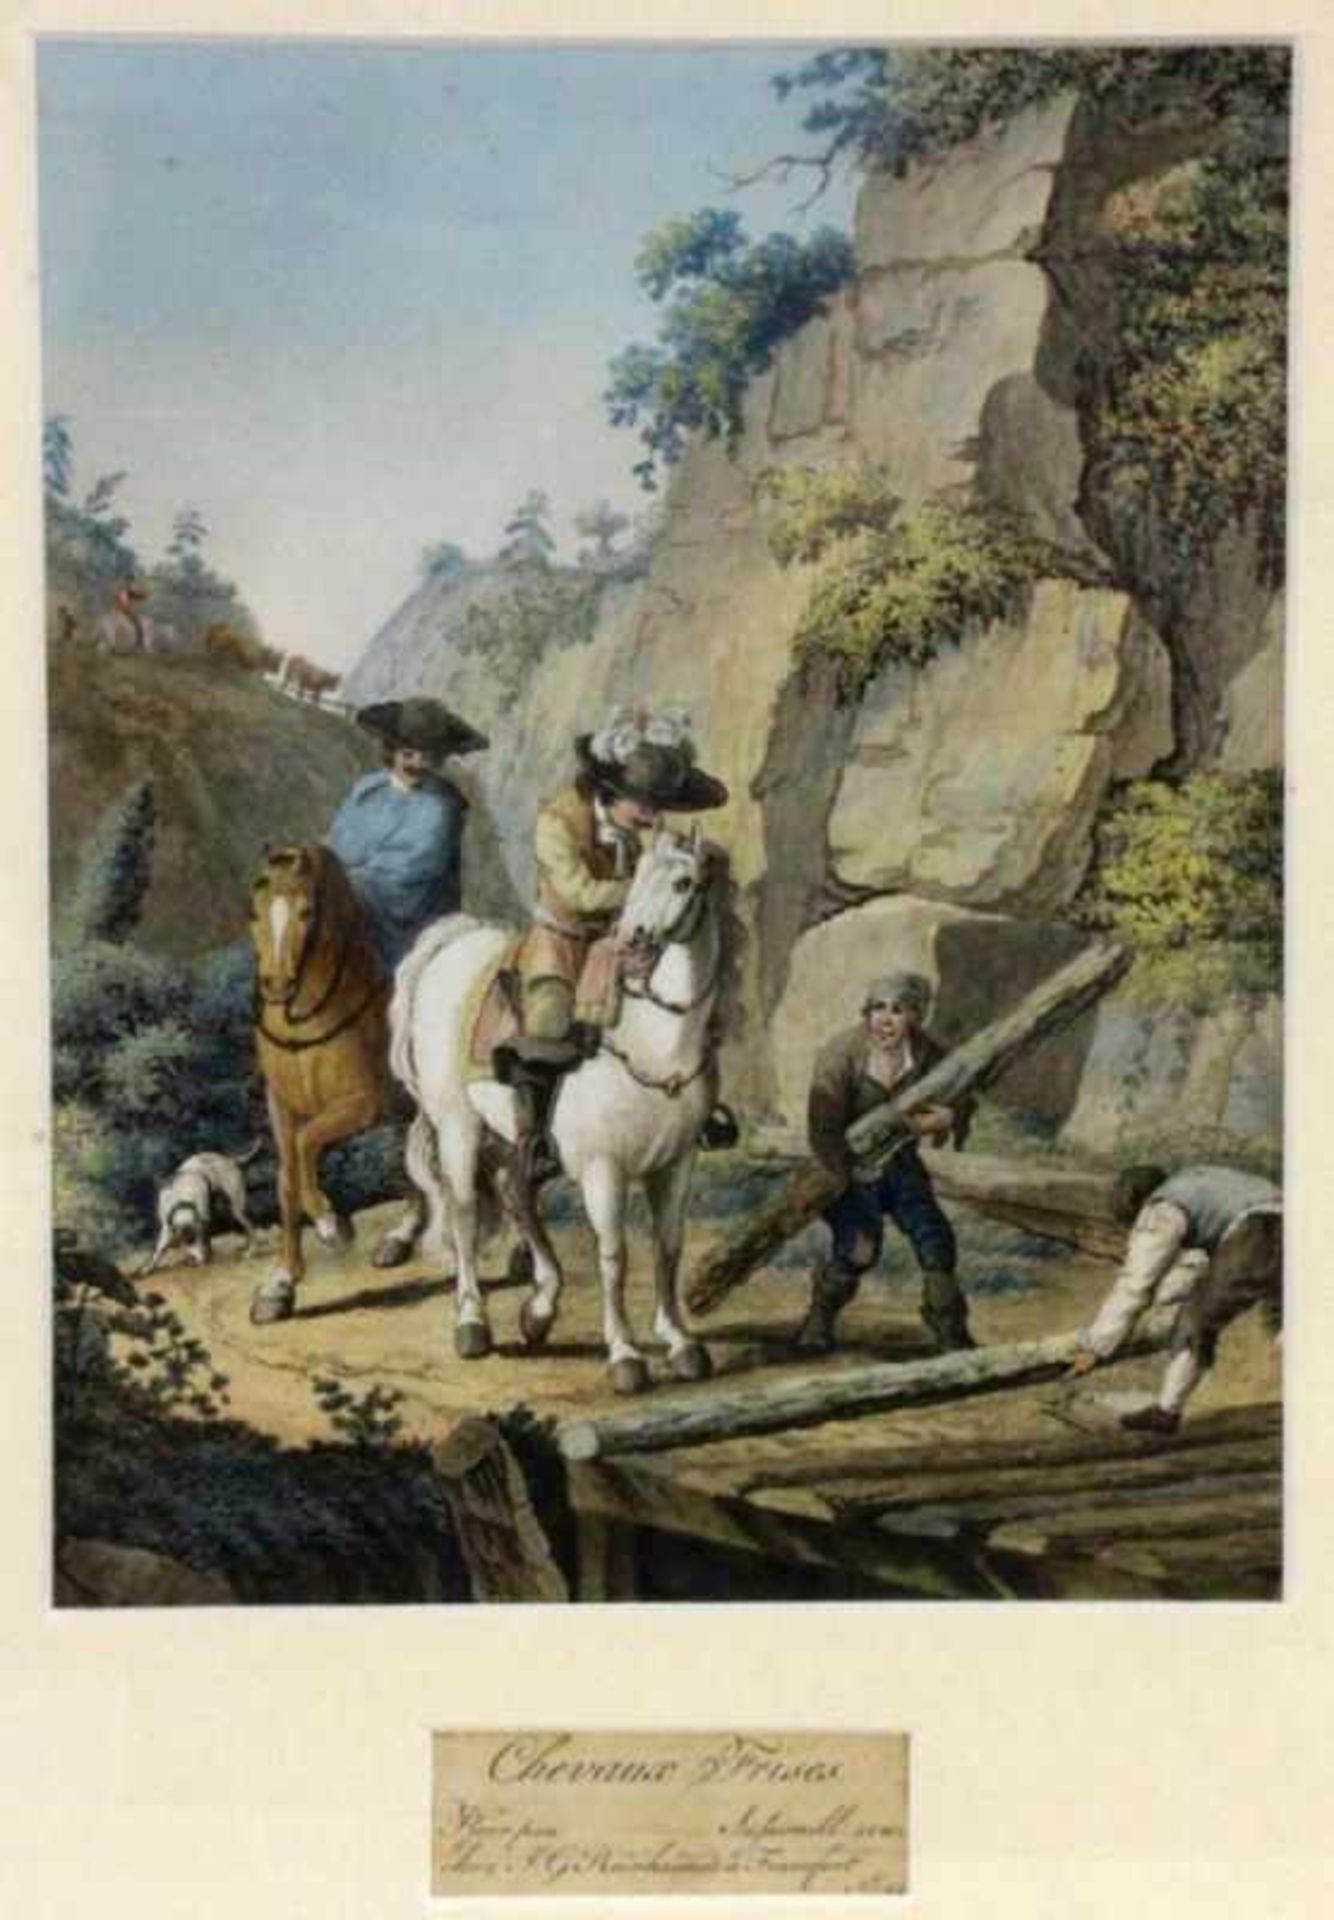 PFORR, JOHANN GEORG Ulfen 1745 - 1798 Frankfurt/M. "Chevaux Frises" (Spanische Reiter). Kolorierte